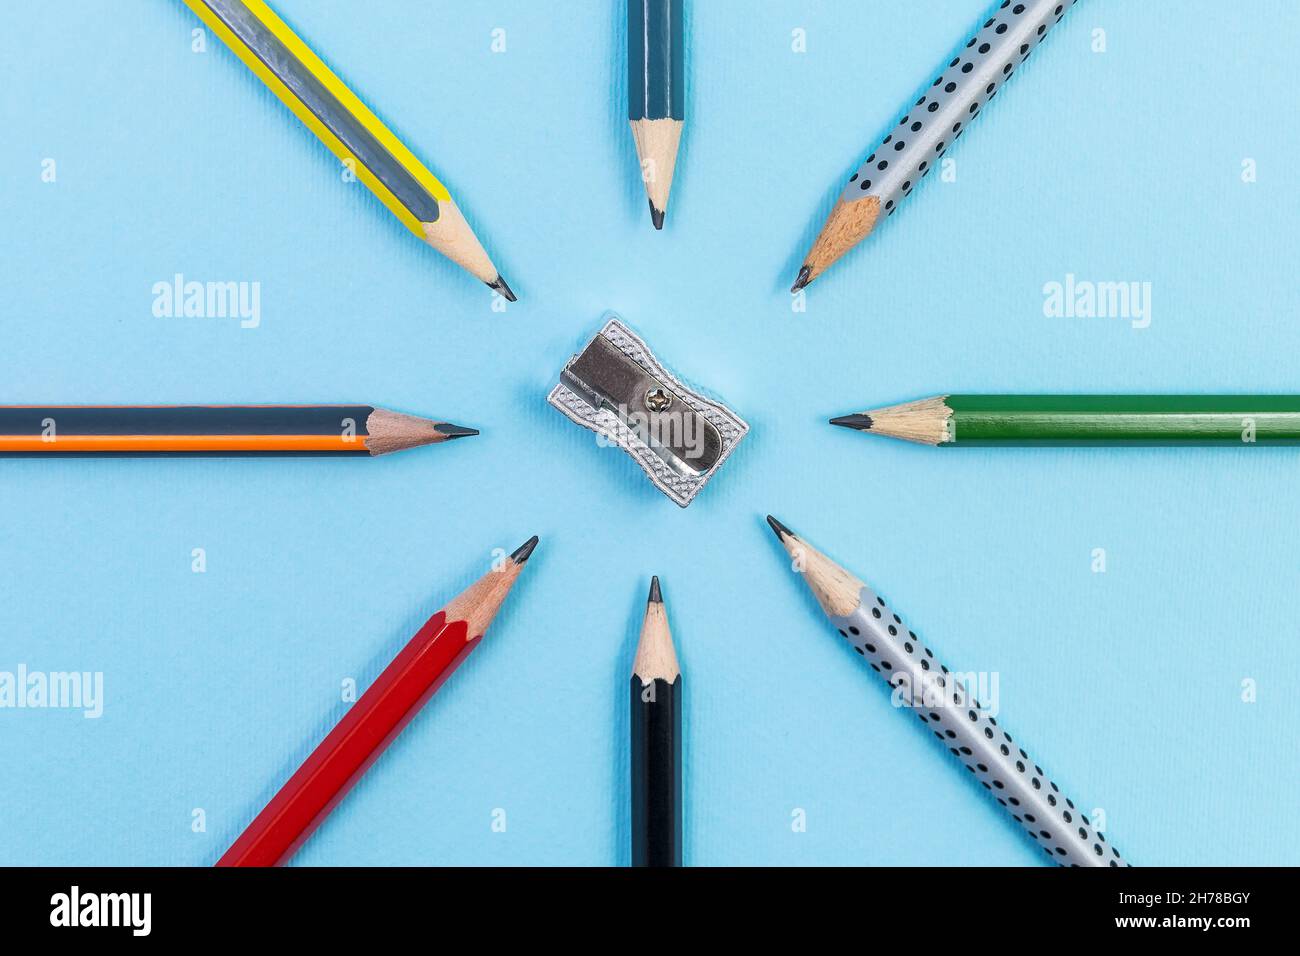 Taille-crayons en métal avec huit crayons graphite différents sur fond bleu Banque D'Images